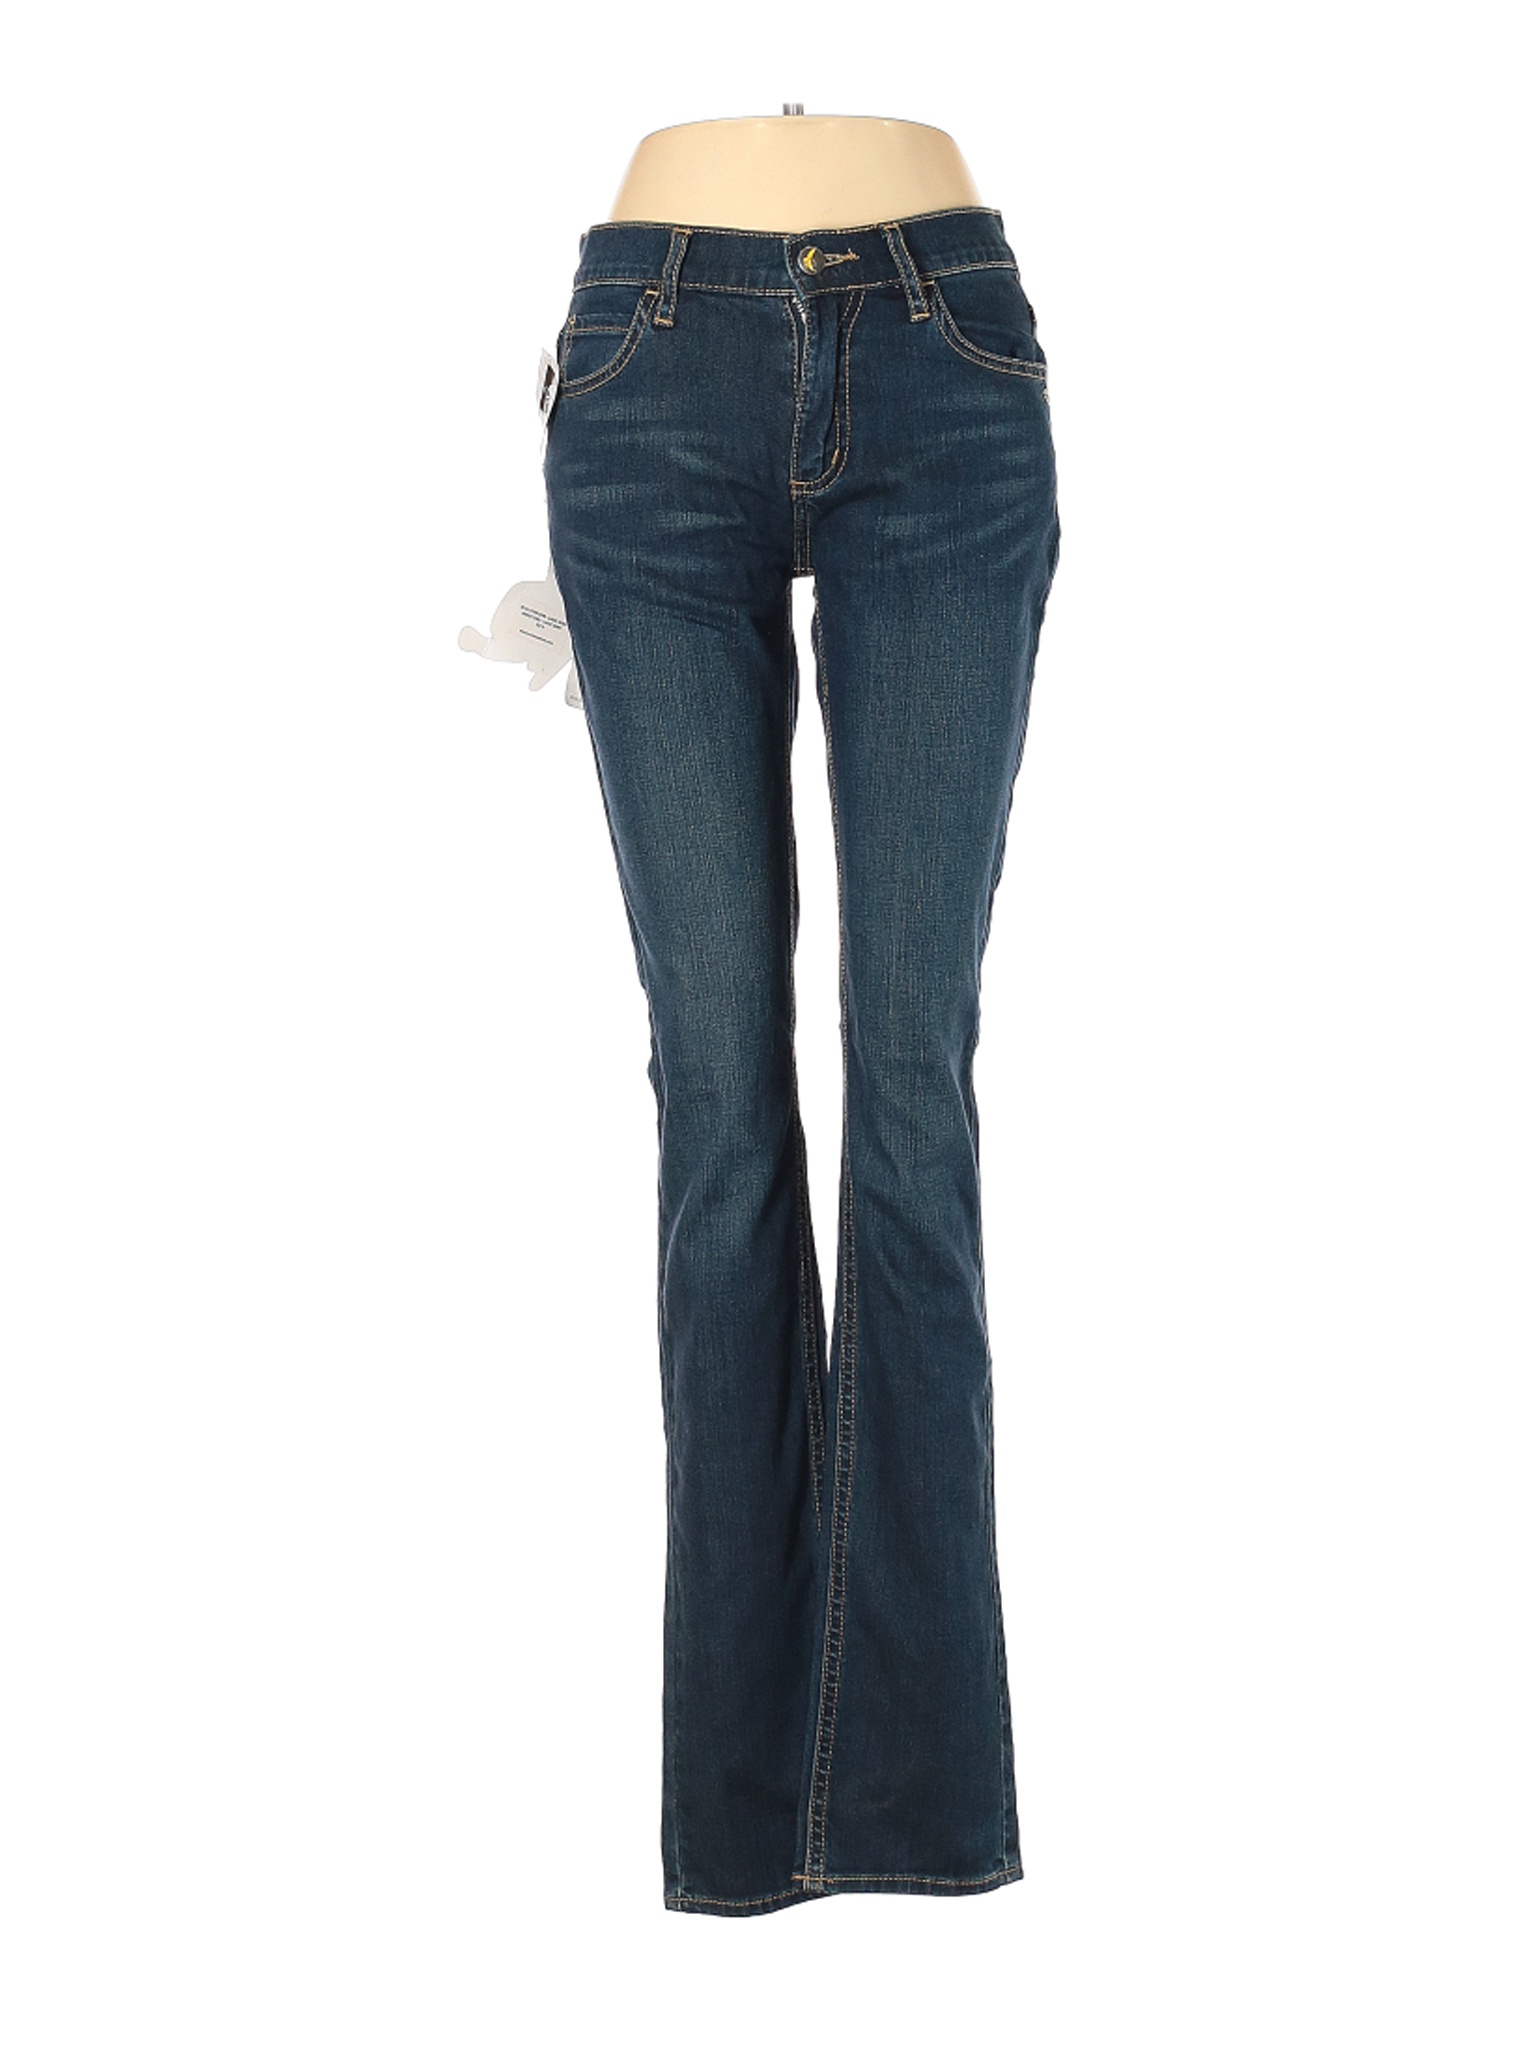 NWT Monkee Genes Women Blue Jeans 28W | eBay